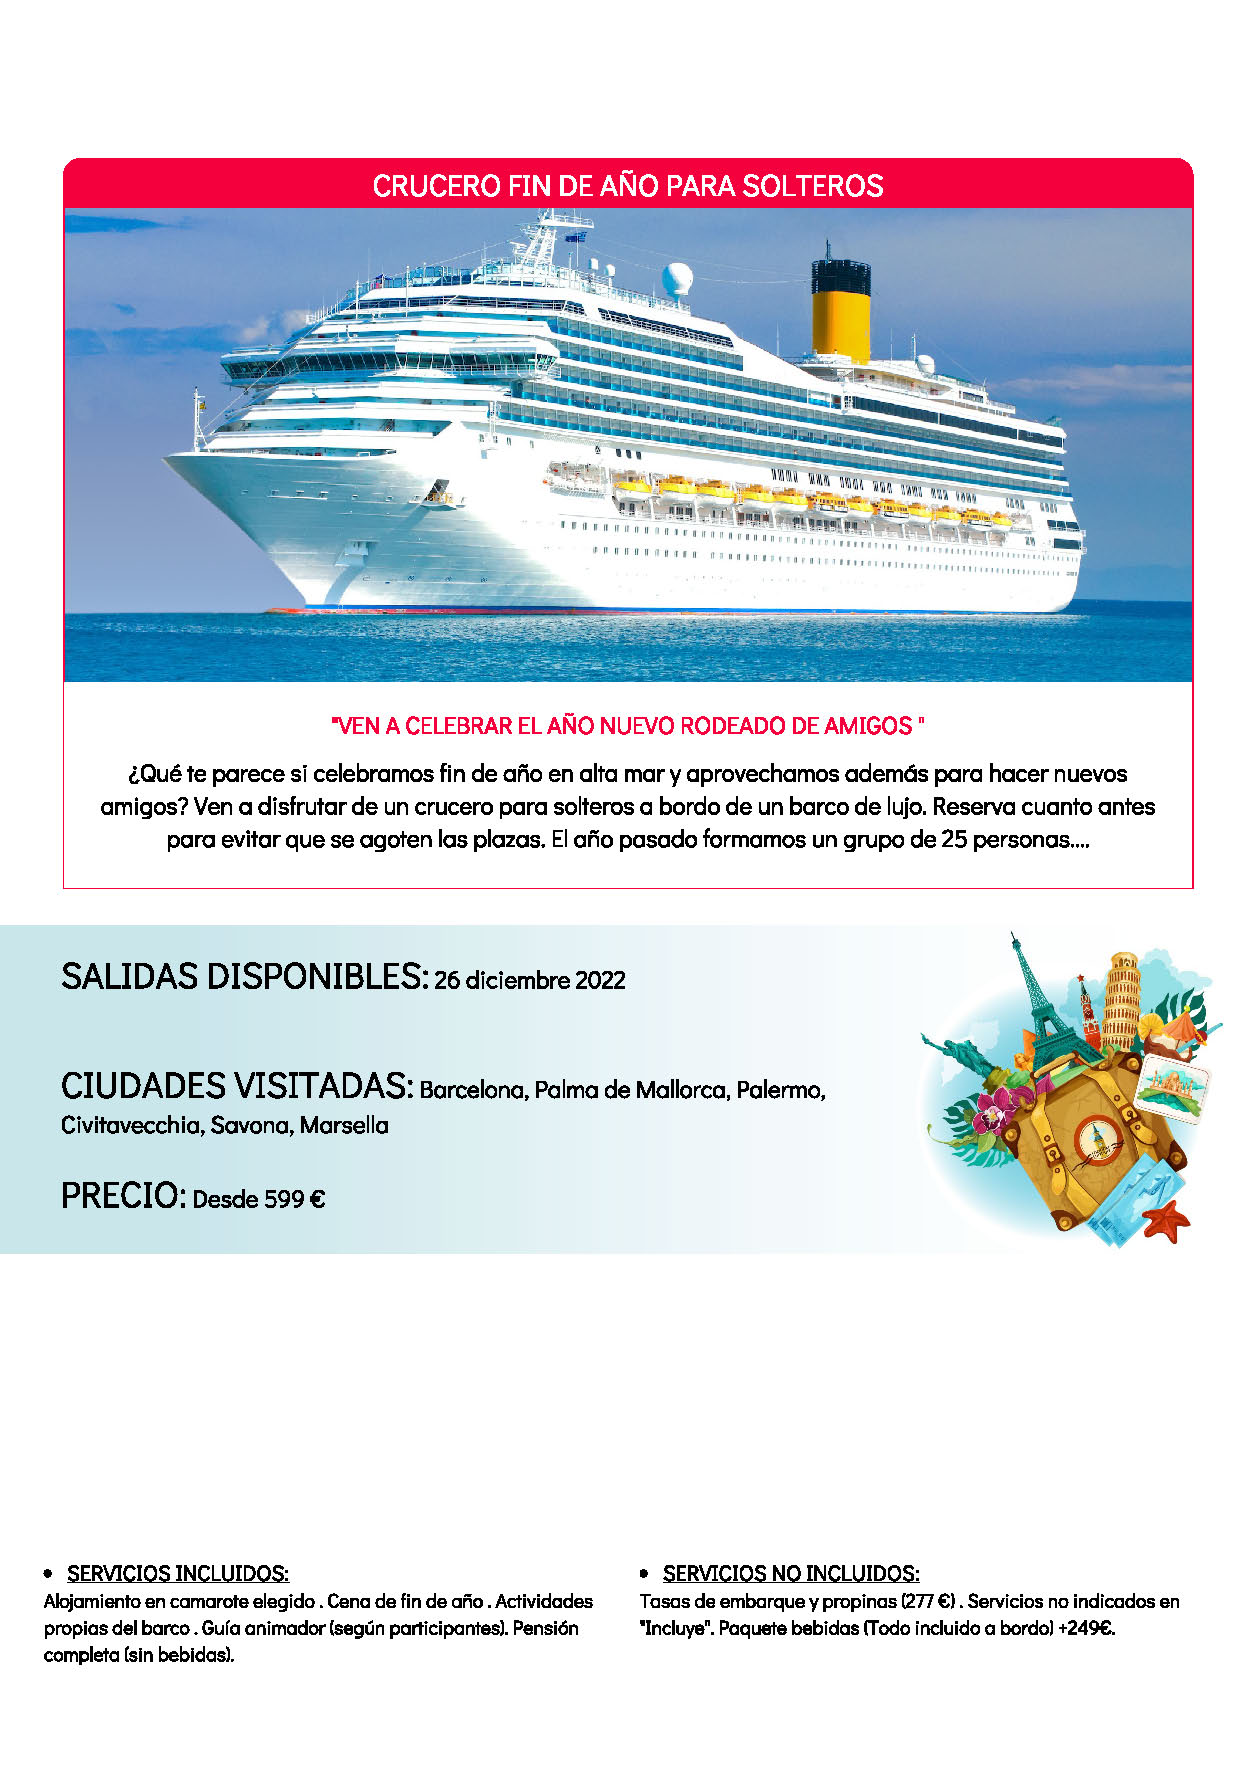 Oferta Solteros Viajeros Crucero Singles Fin de Año 2022 salida 26 de diciembre 2022